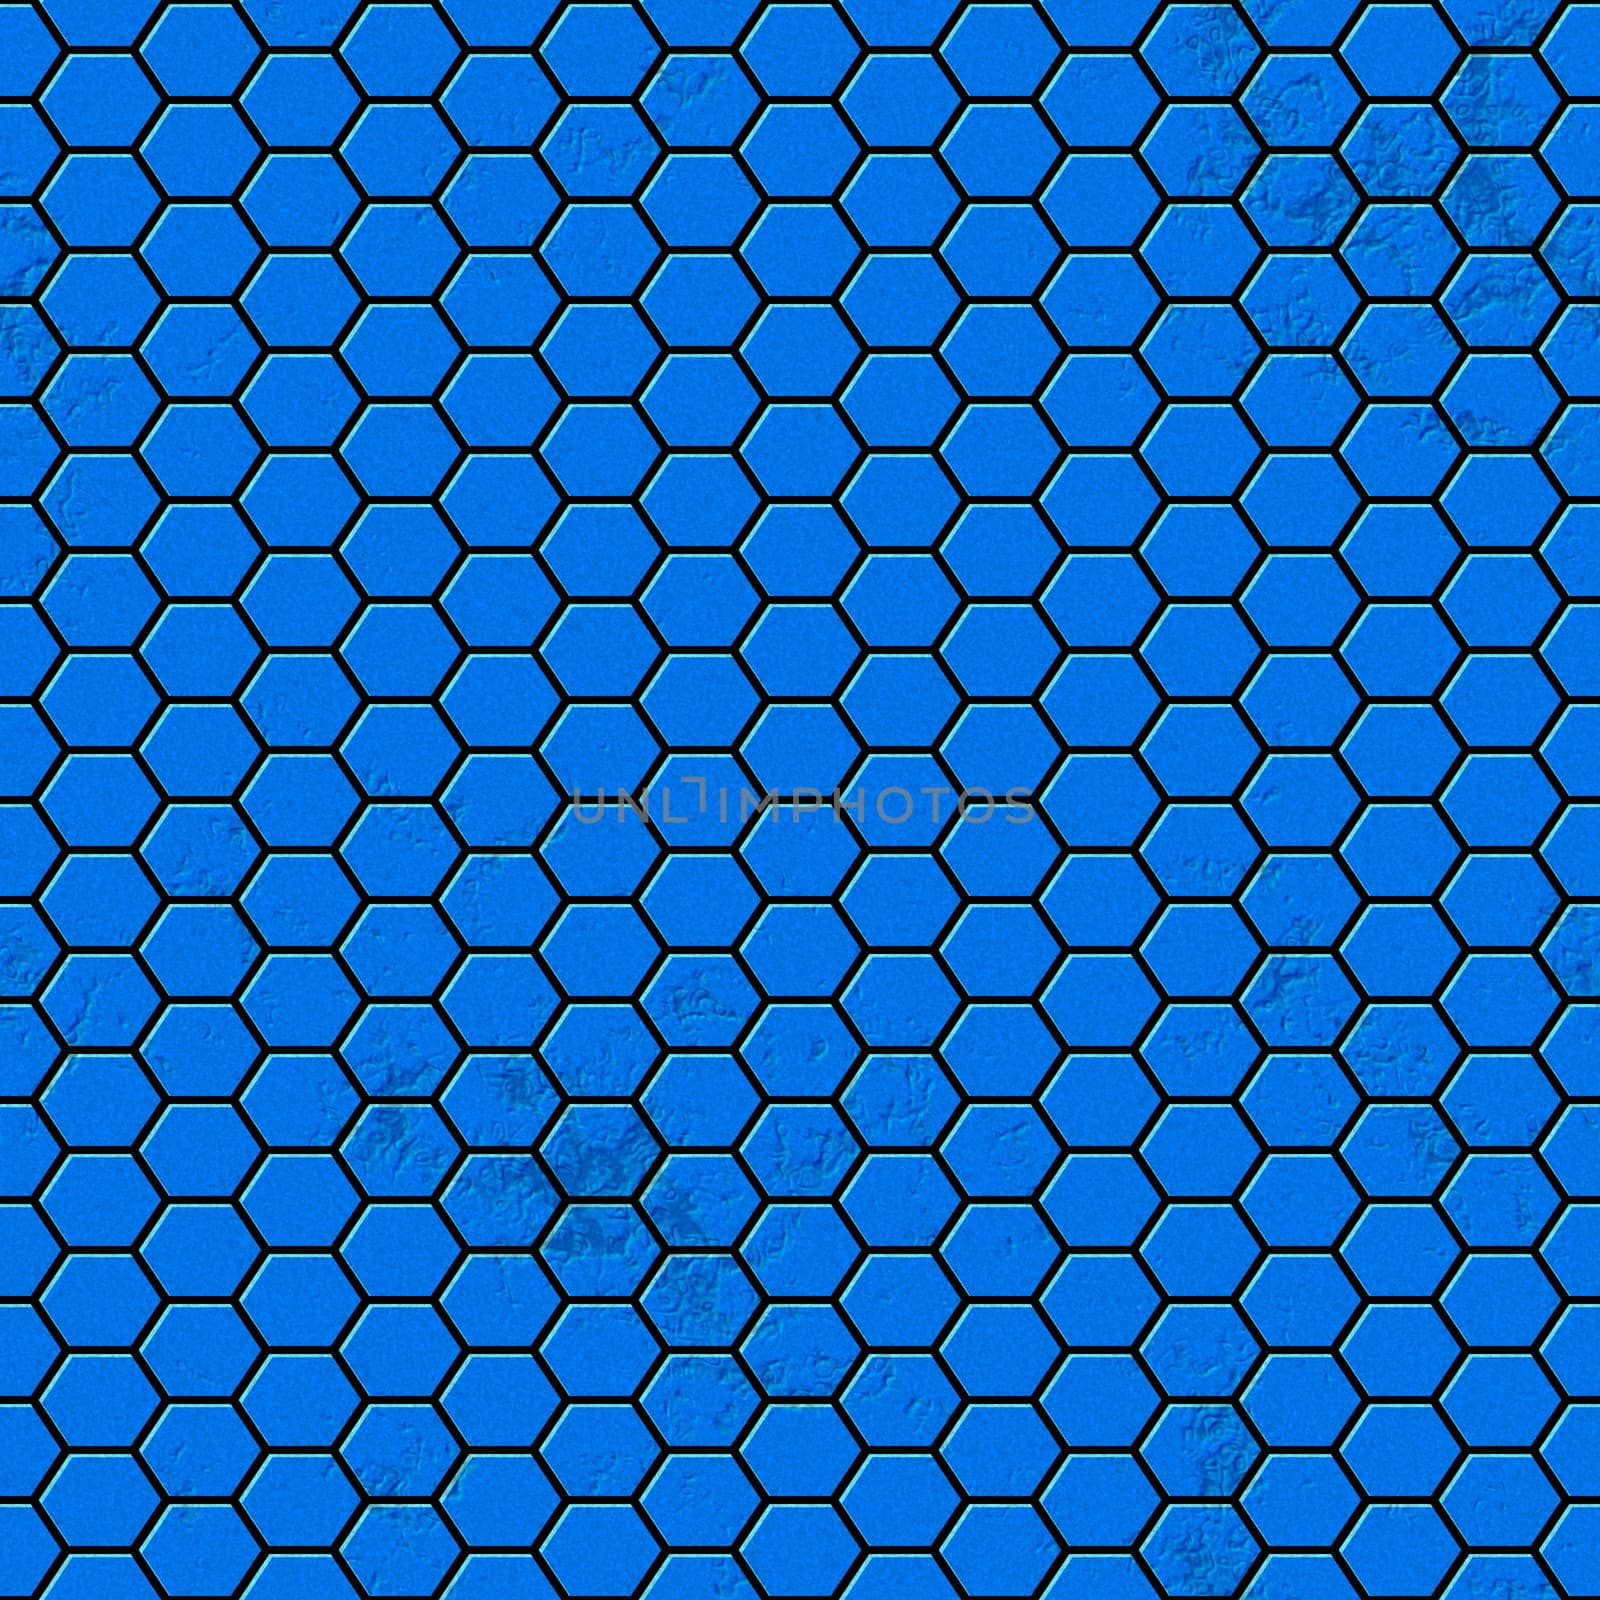 An illustration of a seamless blue hexagon texture